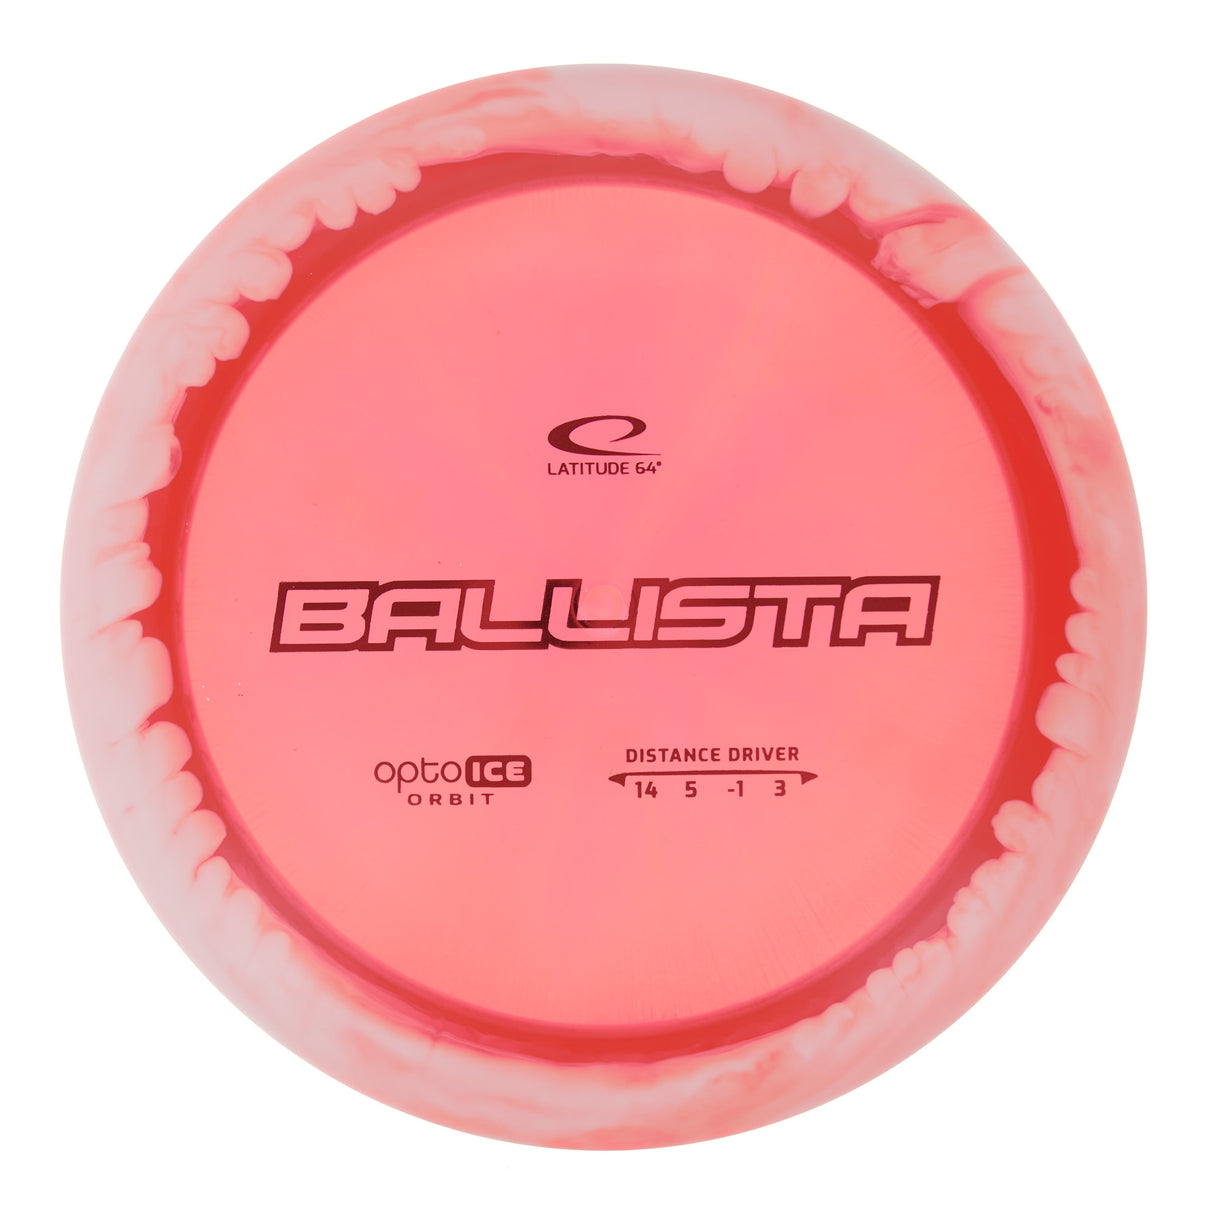 Latitude 64 Ballista - Opto Ice Orbit 174g | Style 0015